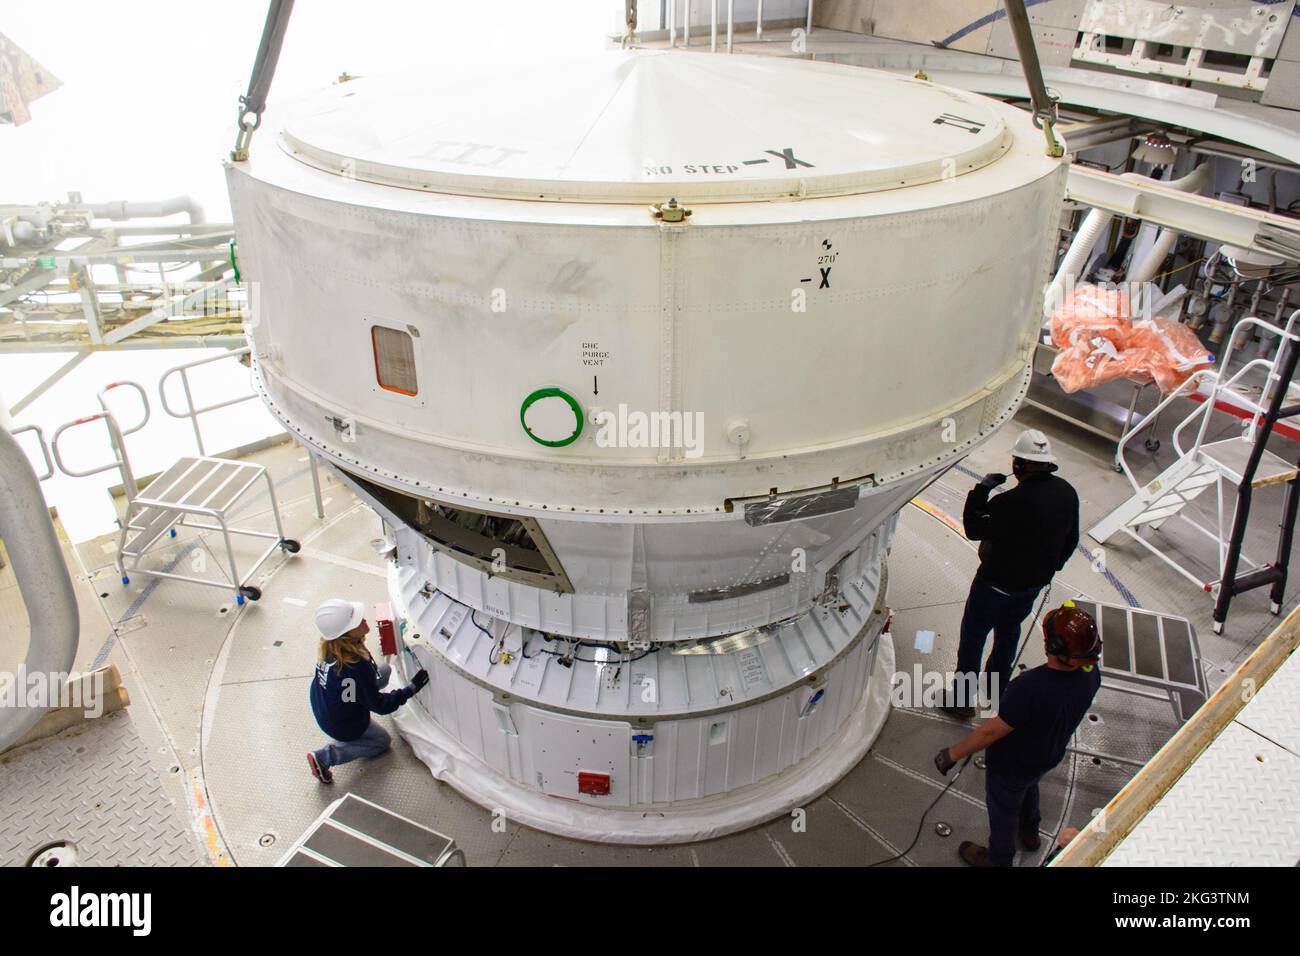 JPSS-2 trasporto di coda in barca e Mate. All'interno del Vandenberg Space Force base (VIF) della Vertical Integration Facility (VIF) in California, i tecnici si assicurano che l'atlante V della United Launch Alliance (ULA) salga sul palco superiore del razzo il 4 ottobre 2022, per la missione della NOAA (National Oceanic and Atmospheric Administration) e Joint Polar satellite System-2 (JPSS-2) della NASA. La chiocciola è il pezzo di collegamento dell'hardware di volo che unisce lo stadio superiore Atlas V con la carenatura del carico utile, l'involucro protettivo che circonda il satellite JPSS-2. Una volta che la carenatura del carico utile arriva al VIF, t Foto Stock